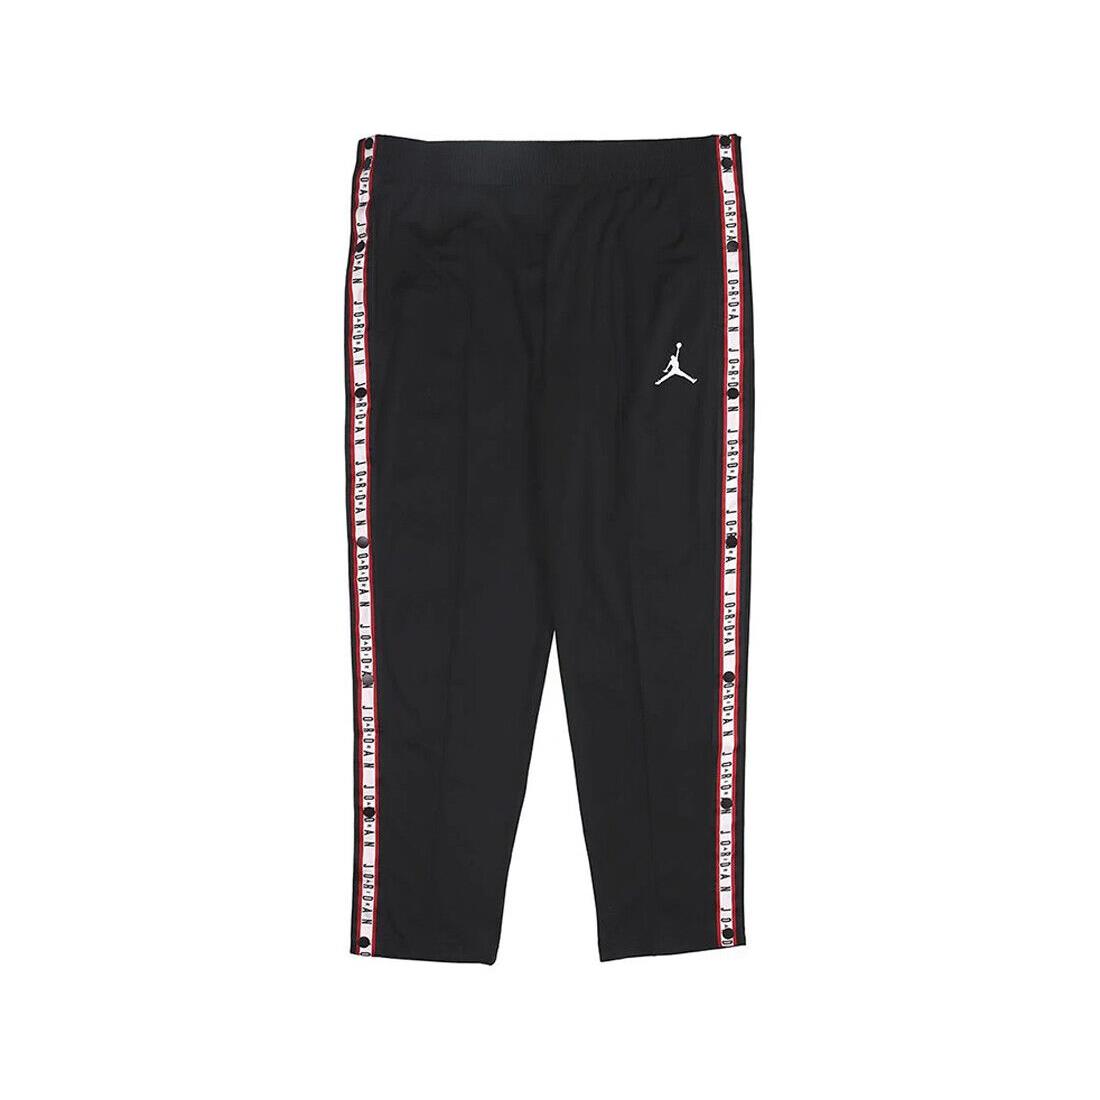 Jordan Tricot Snap Jogger Mens Active Pants Size M Color: Black/white/red